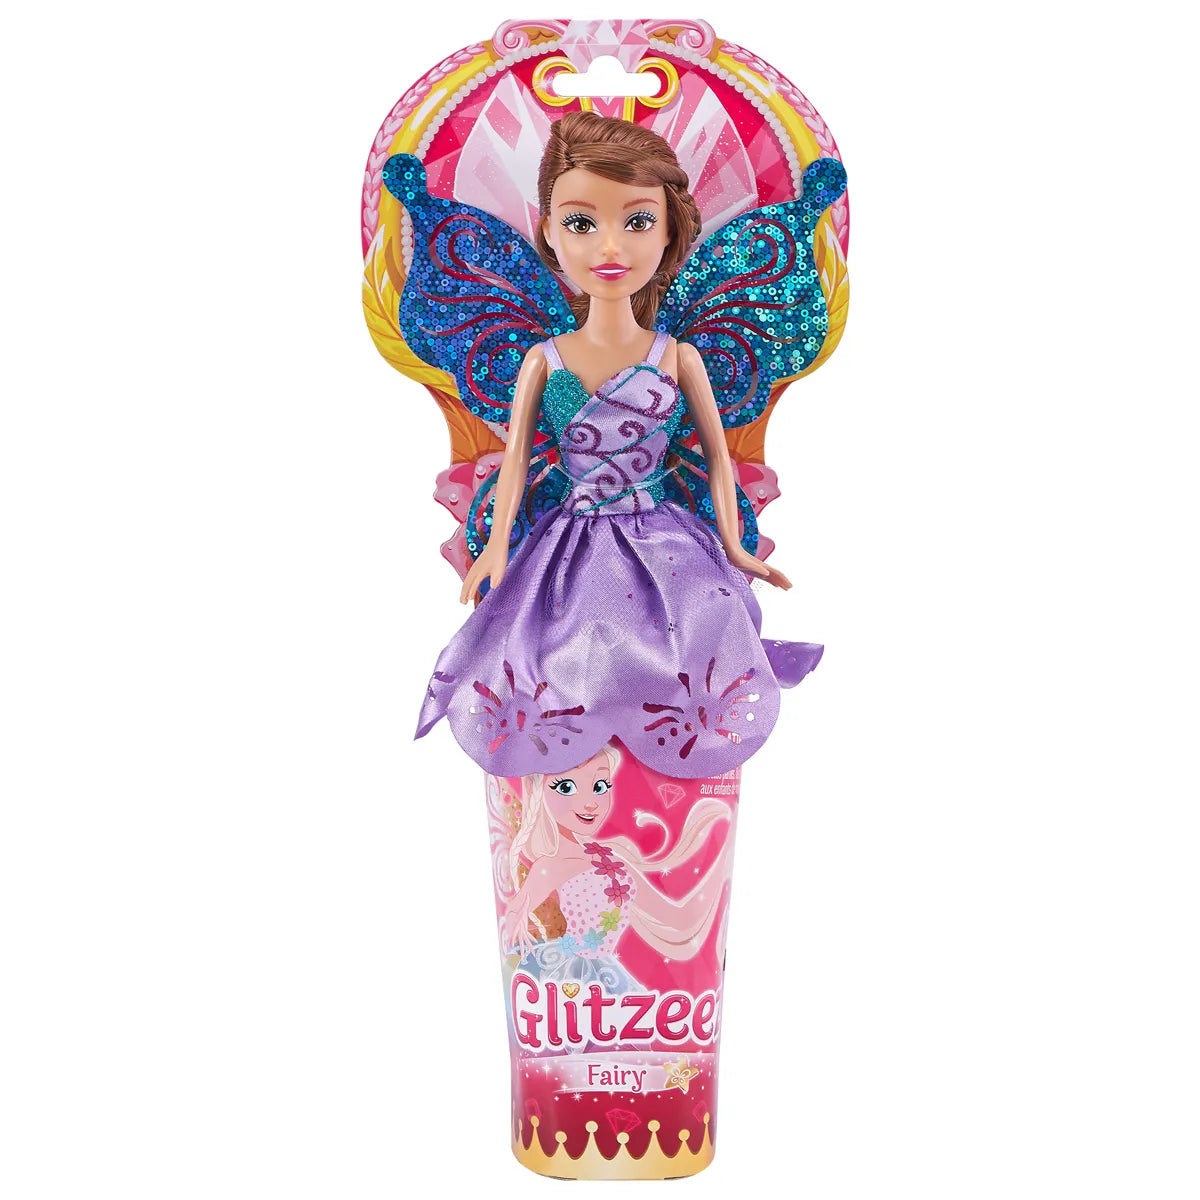 Glitzeez Magical Fairy 27cm Doll (Styles Vary)